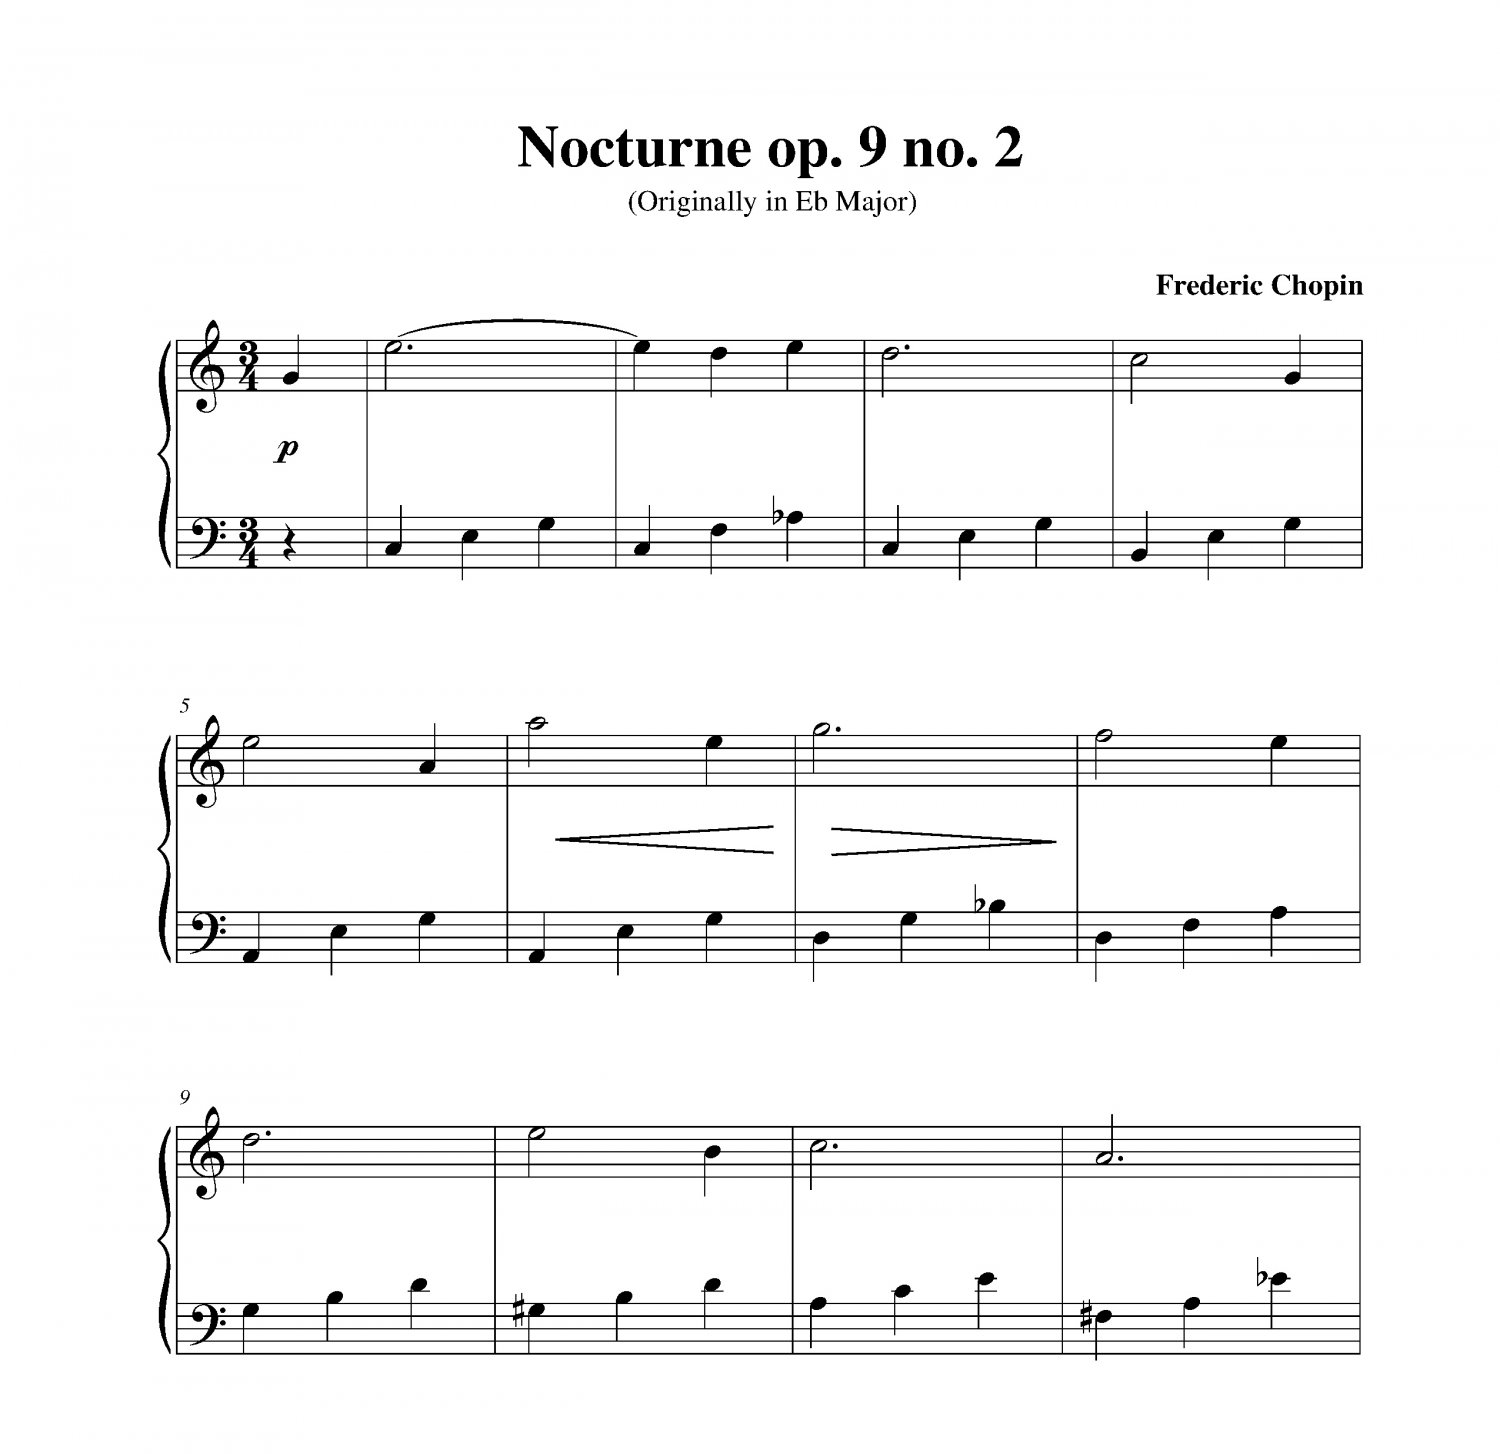 chopin nocturne op.9 no.2 pdf